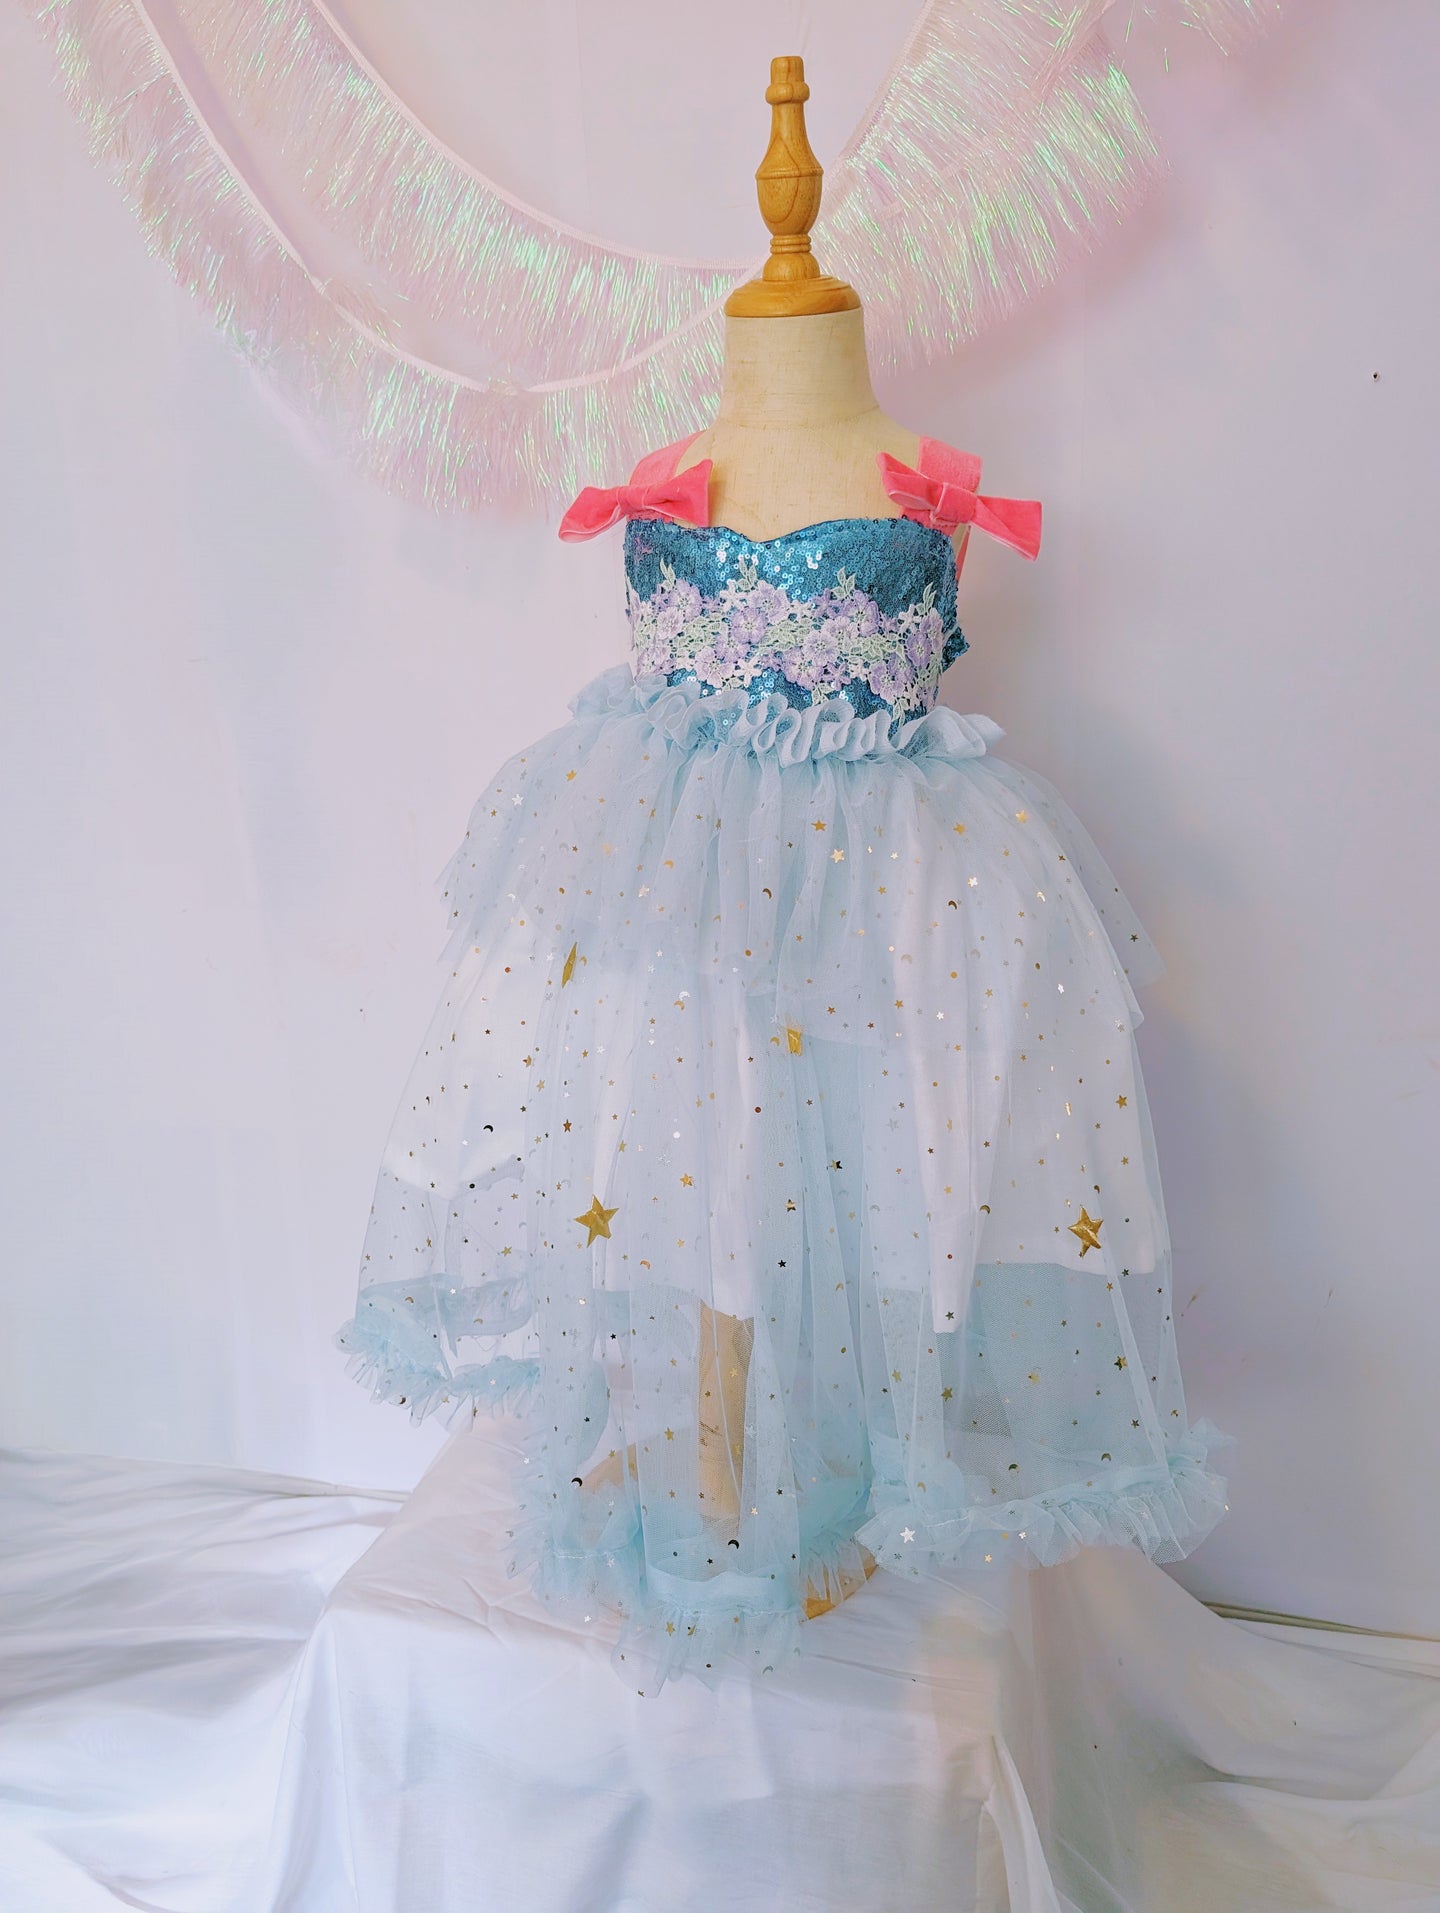 Child size 4-6 fantasia dress